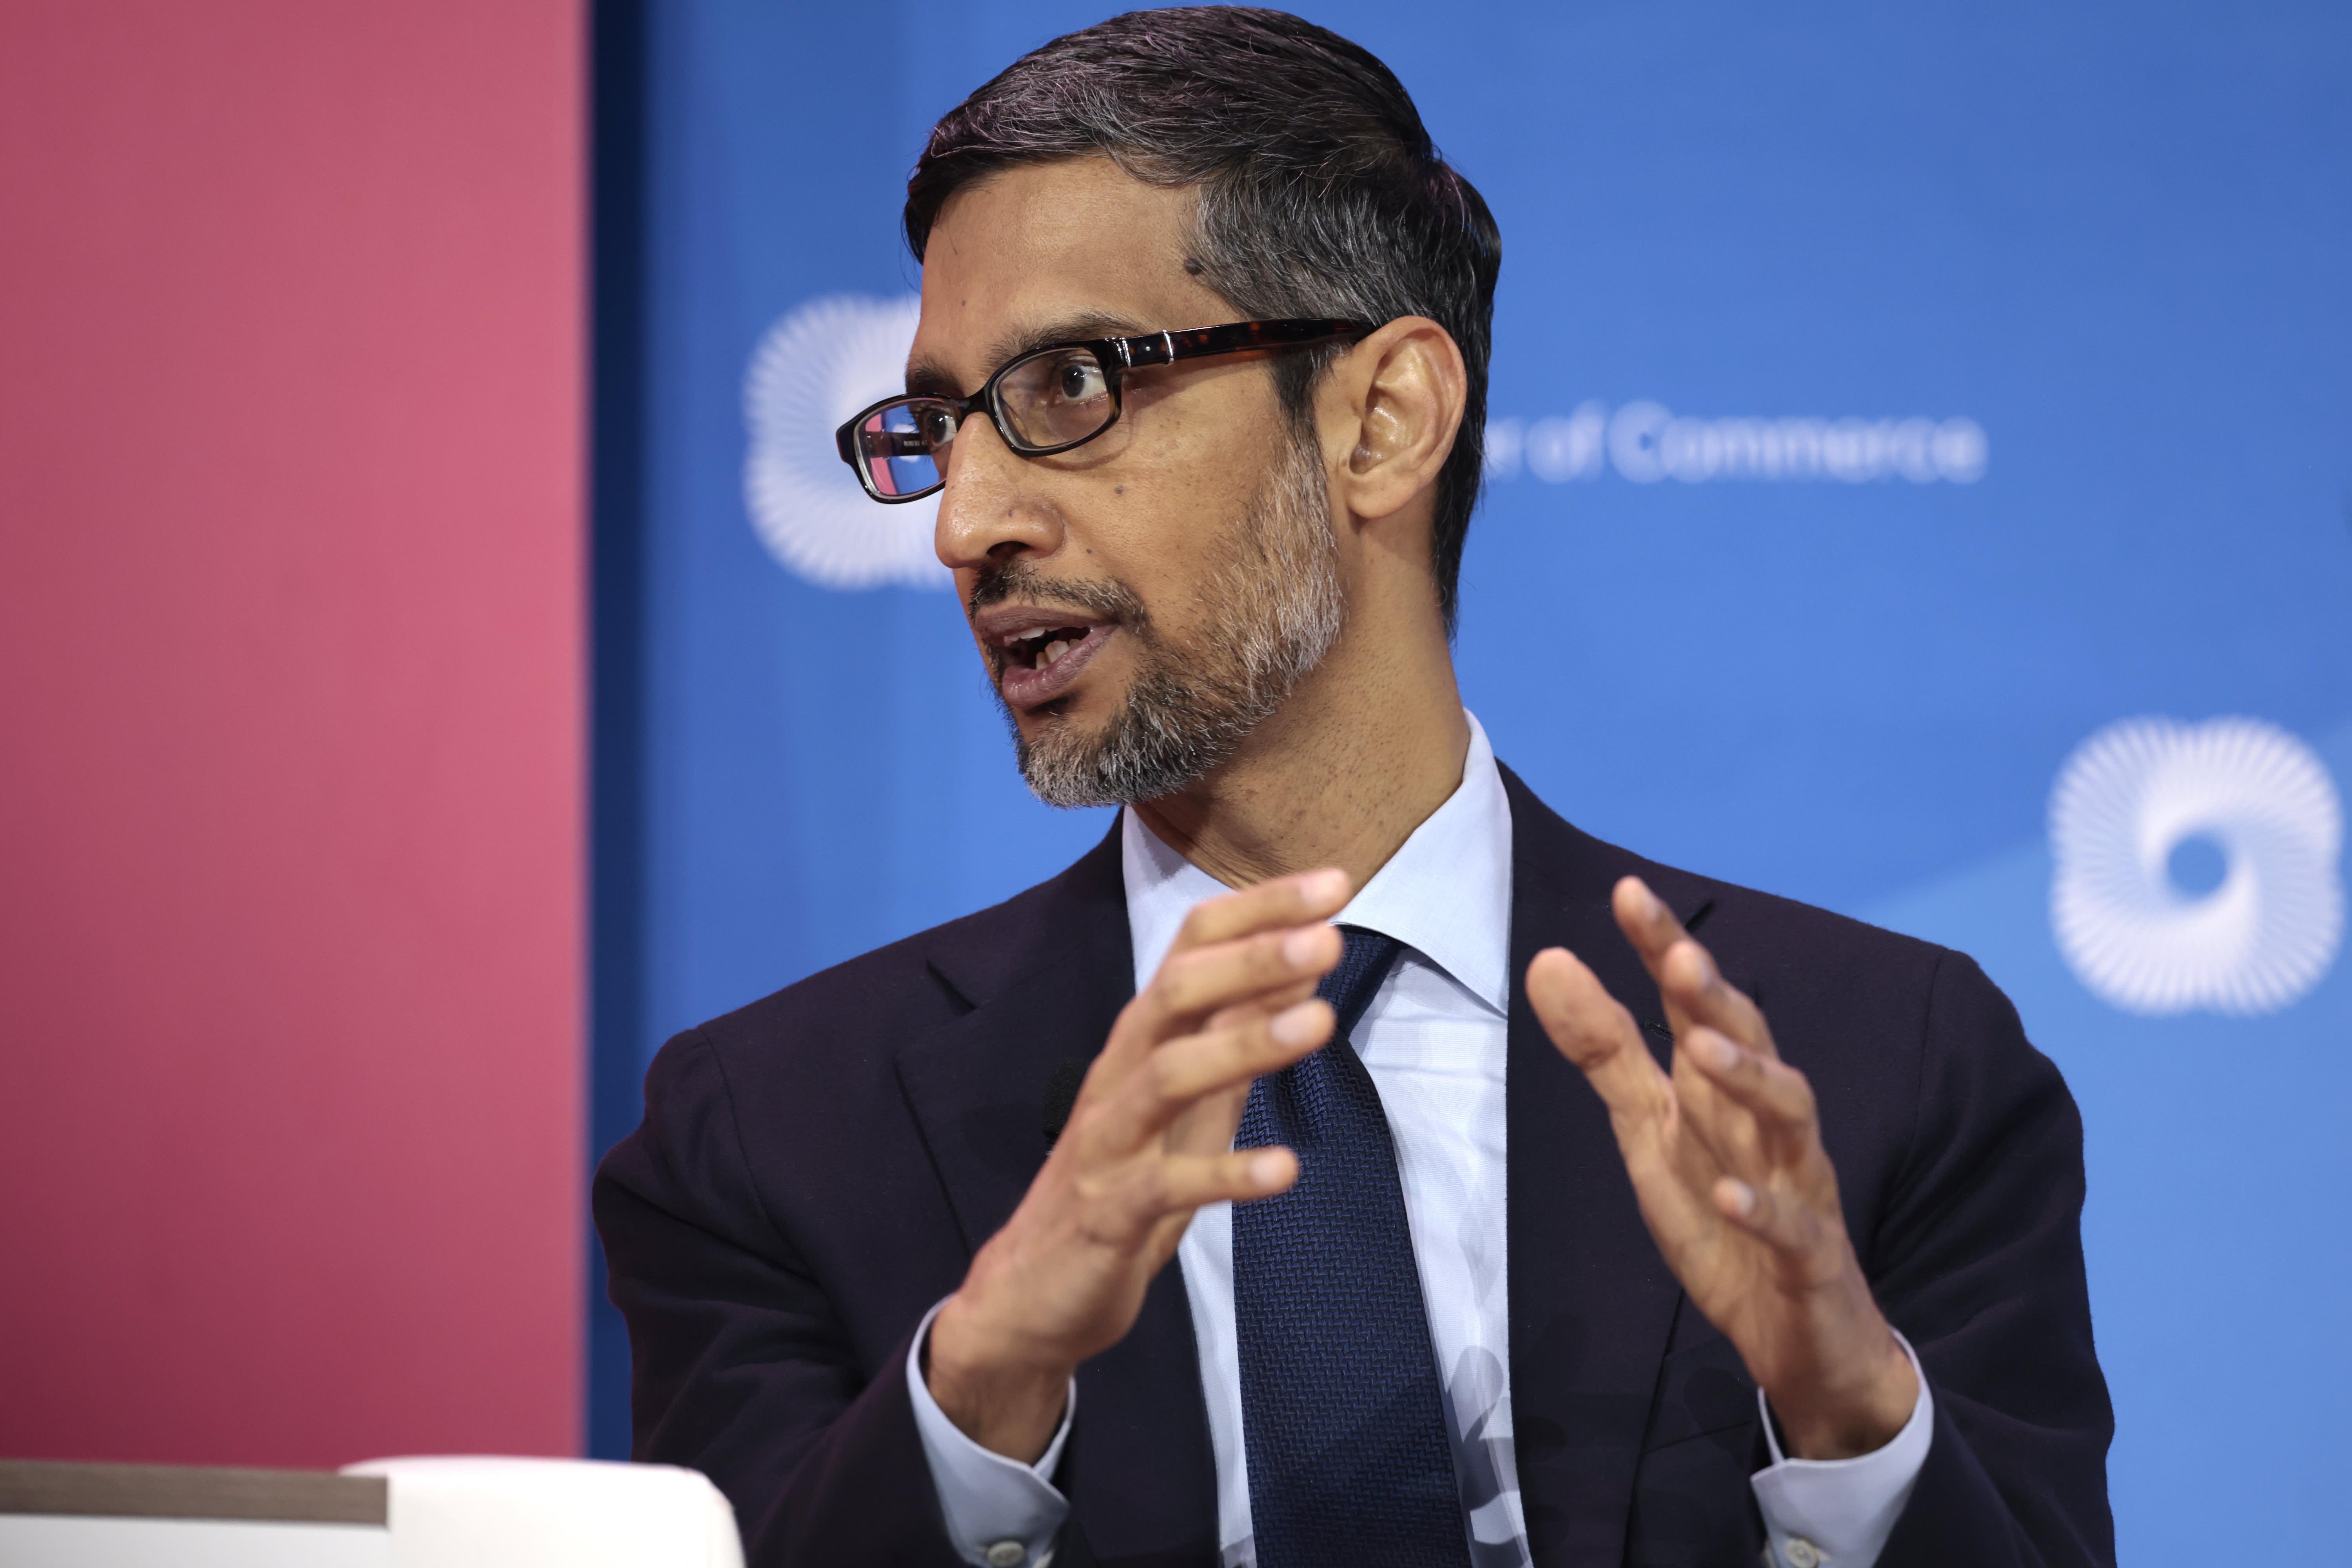 El CEO de Google, Sundar Pichai, advierte a la sociedad que se prepare para el impacto de la aceleración de la IA